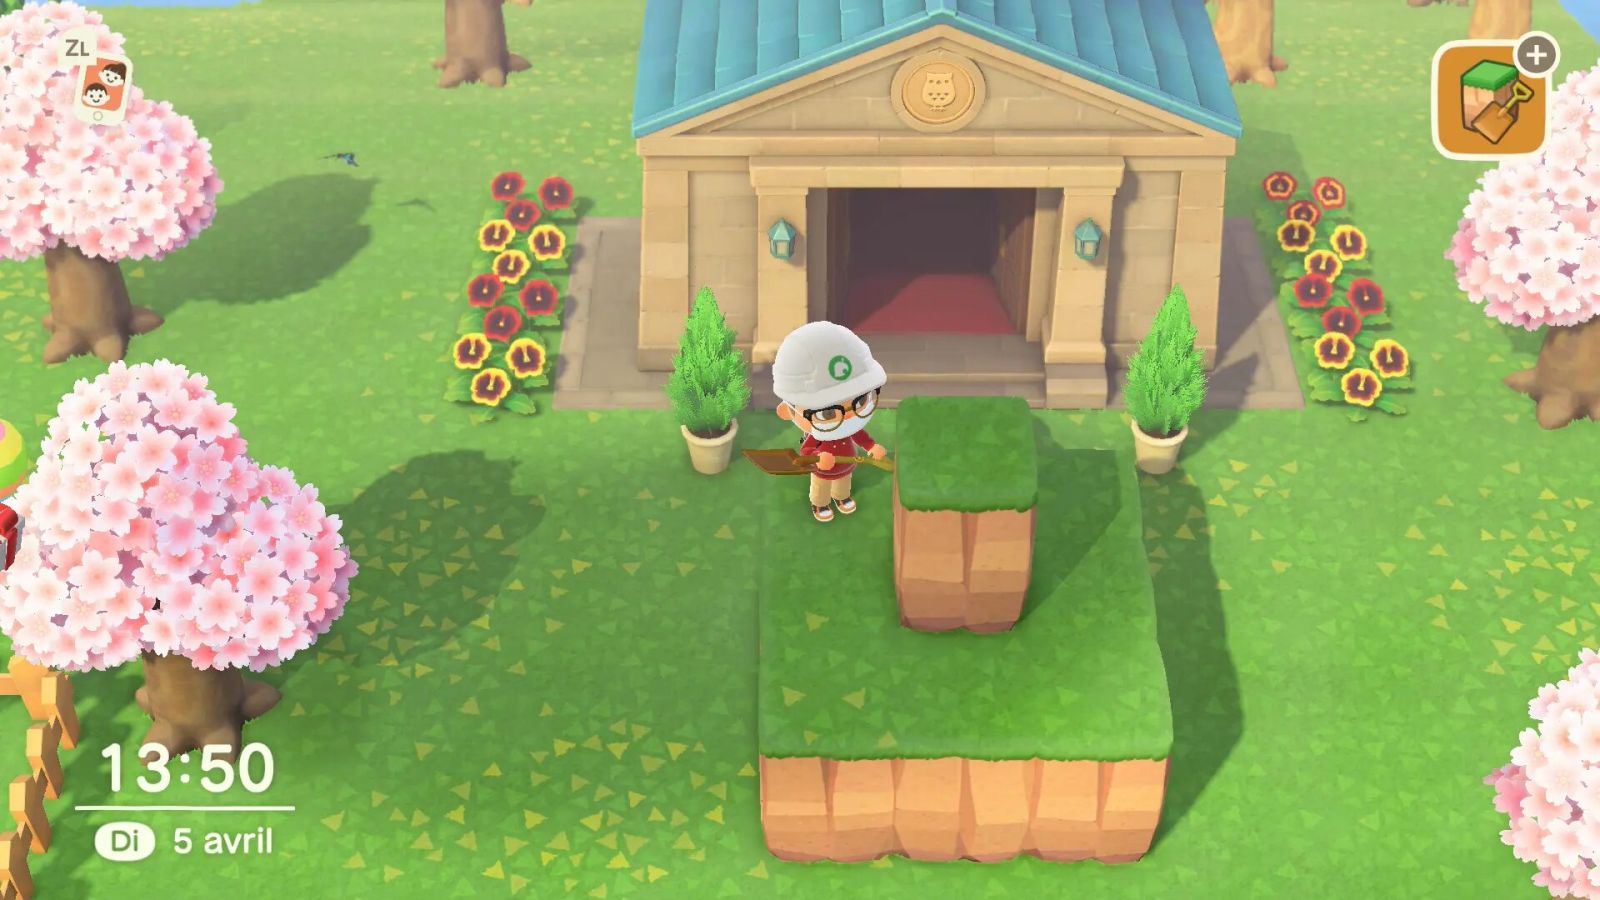 Exemple de terraforming avec le Remod'Île dans Animal Crossing: New Horizons.